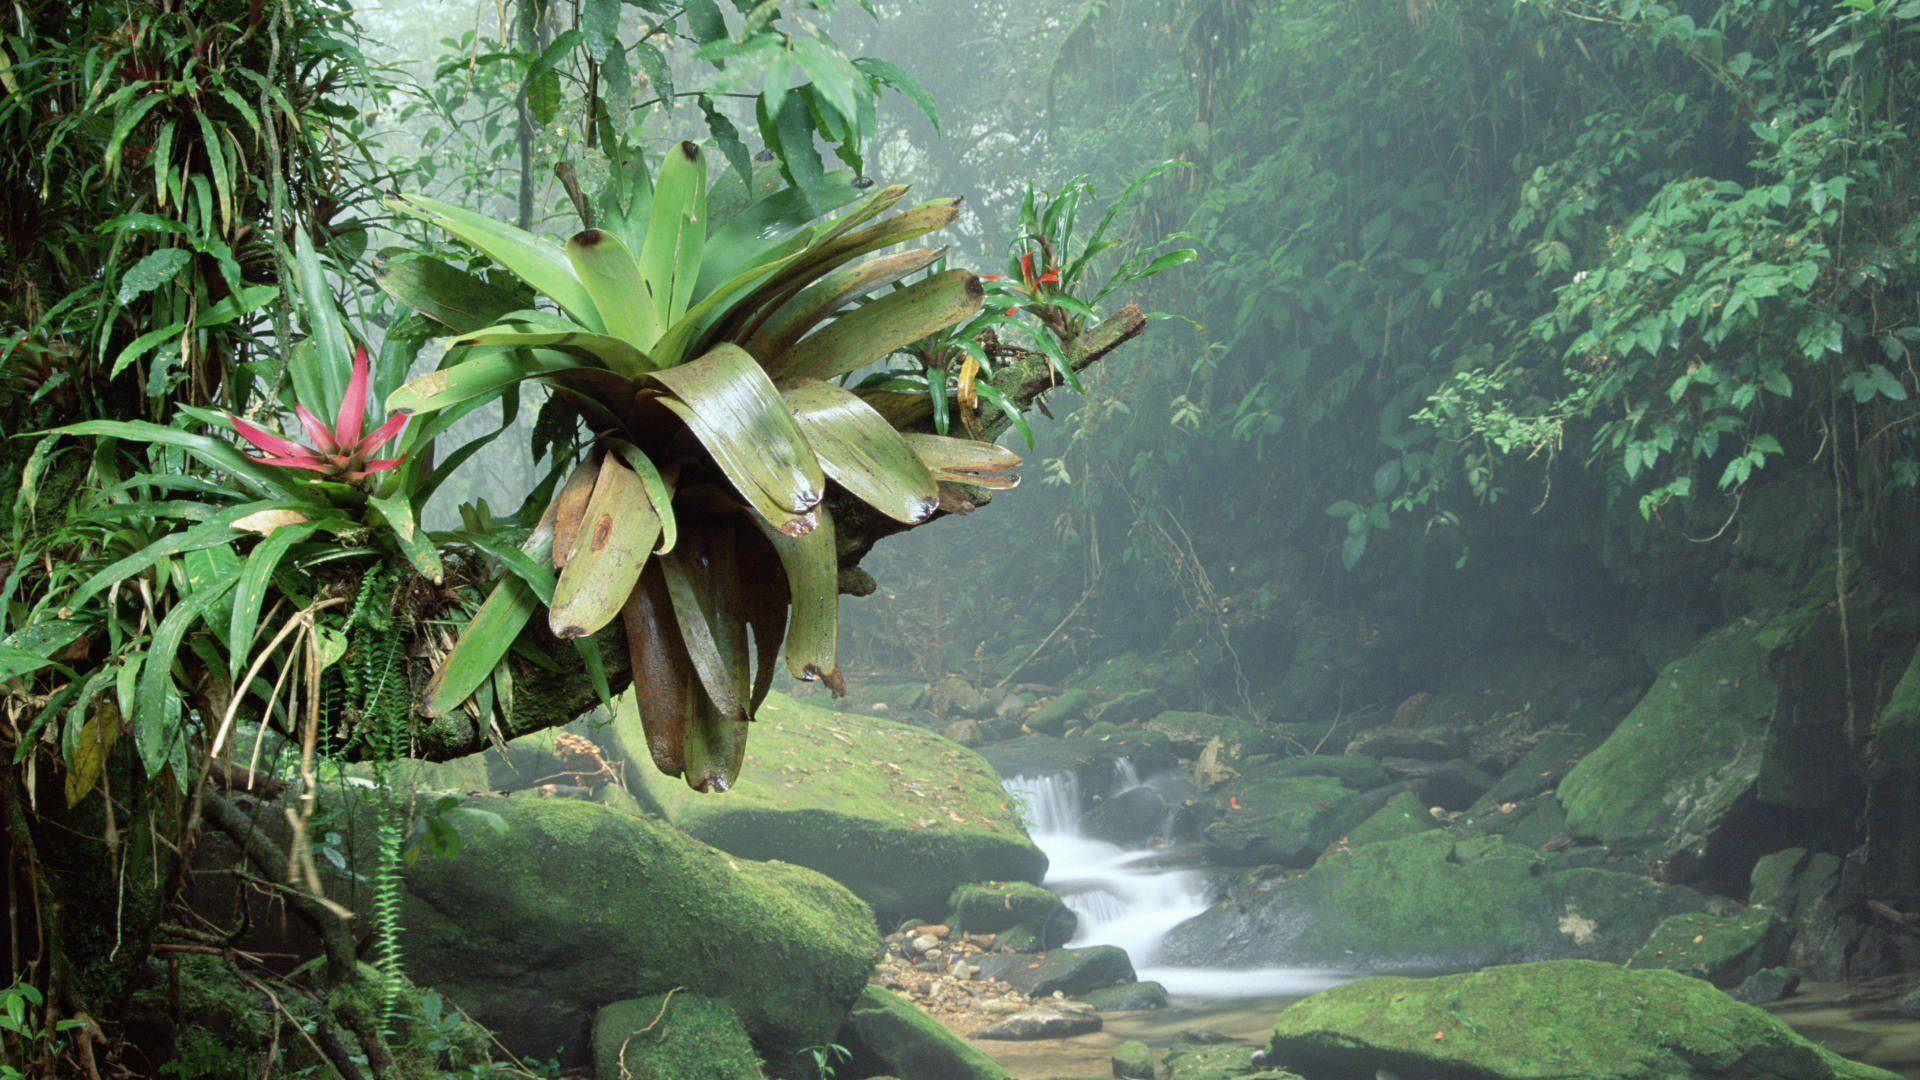 Bromelia Plant In Amazonas